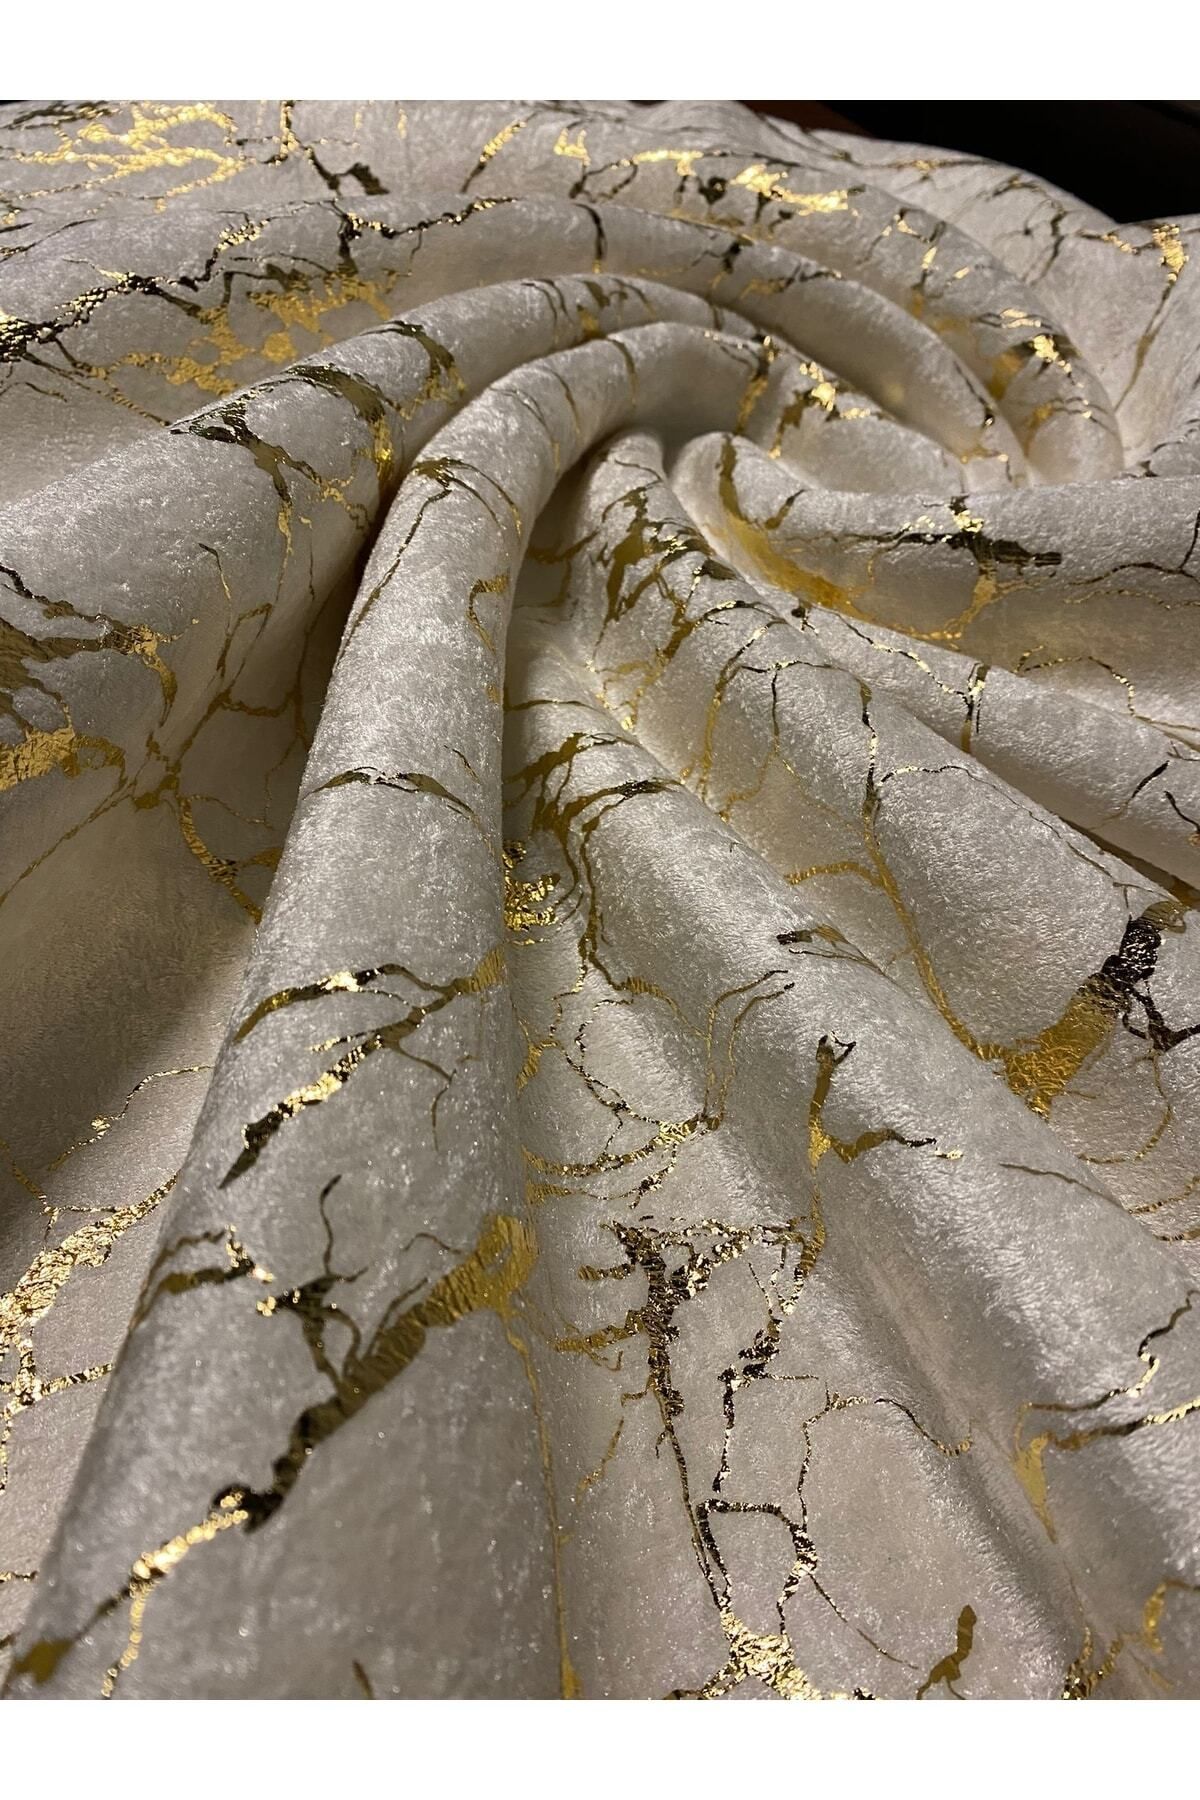 Tekstilsa Koltuk Çekyat Örtüsü Yeni Moda Altın Varaklı Dekoratif Krem Zemin Süngerli Koltuk Örtüsü 1adet